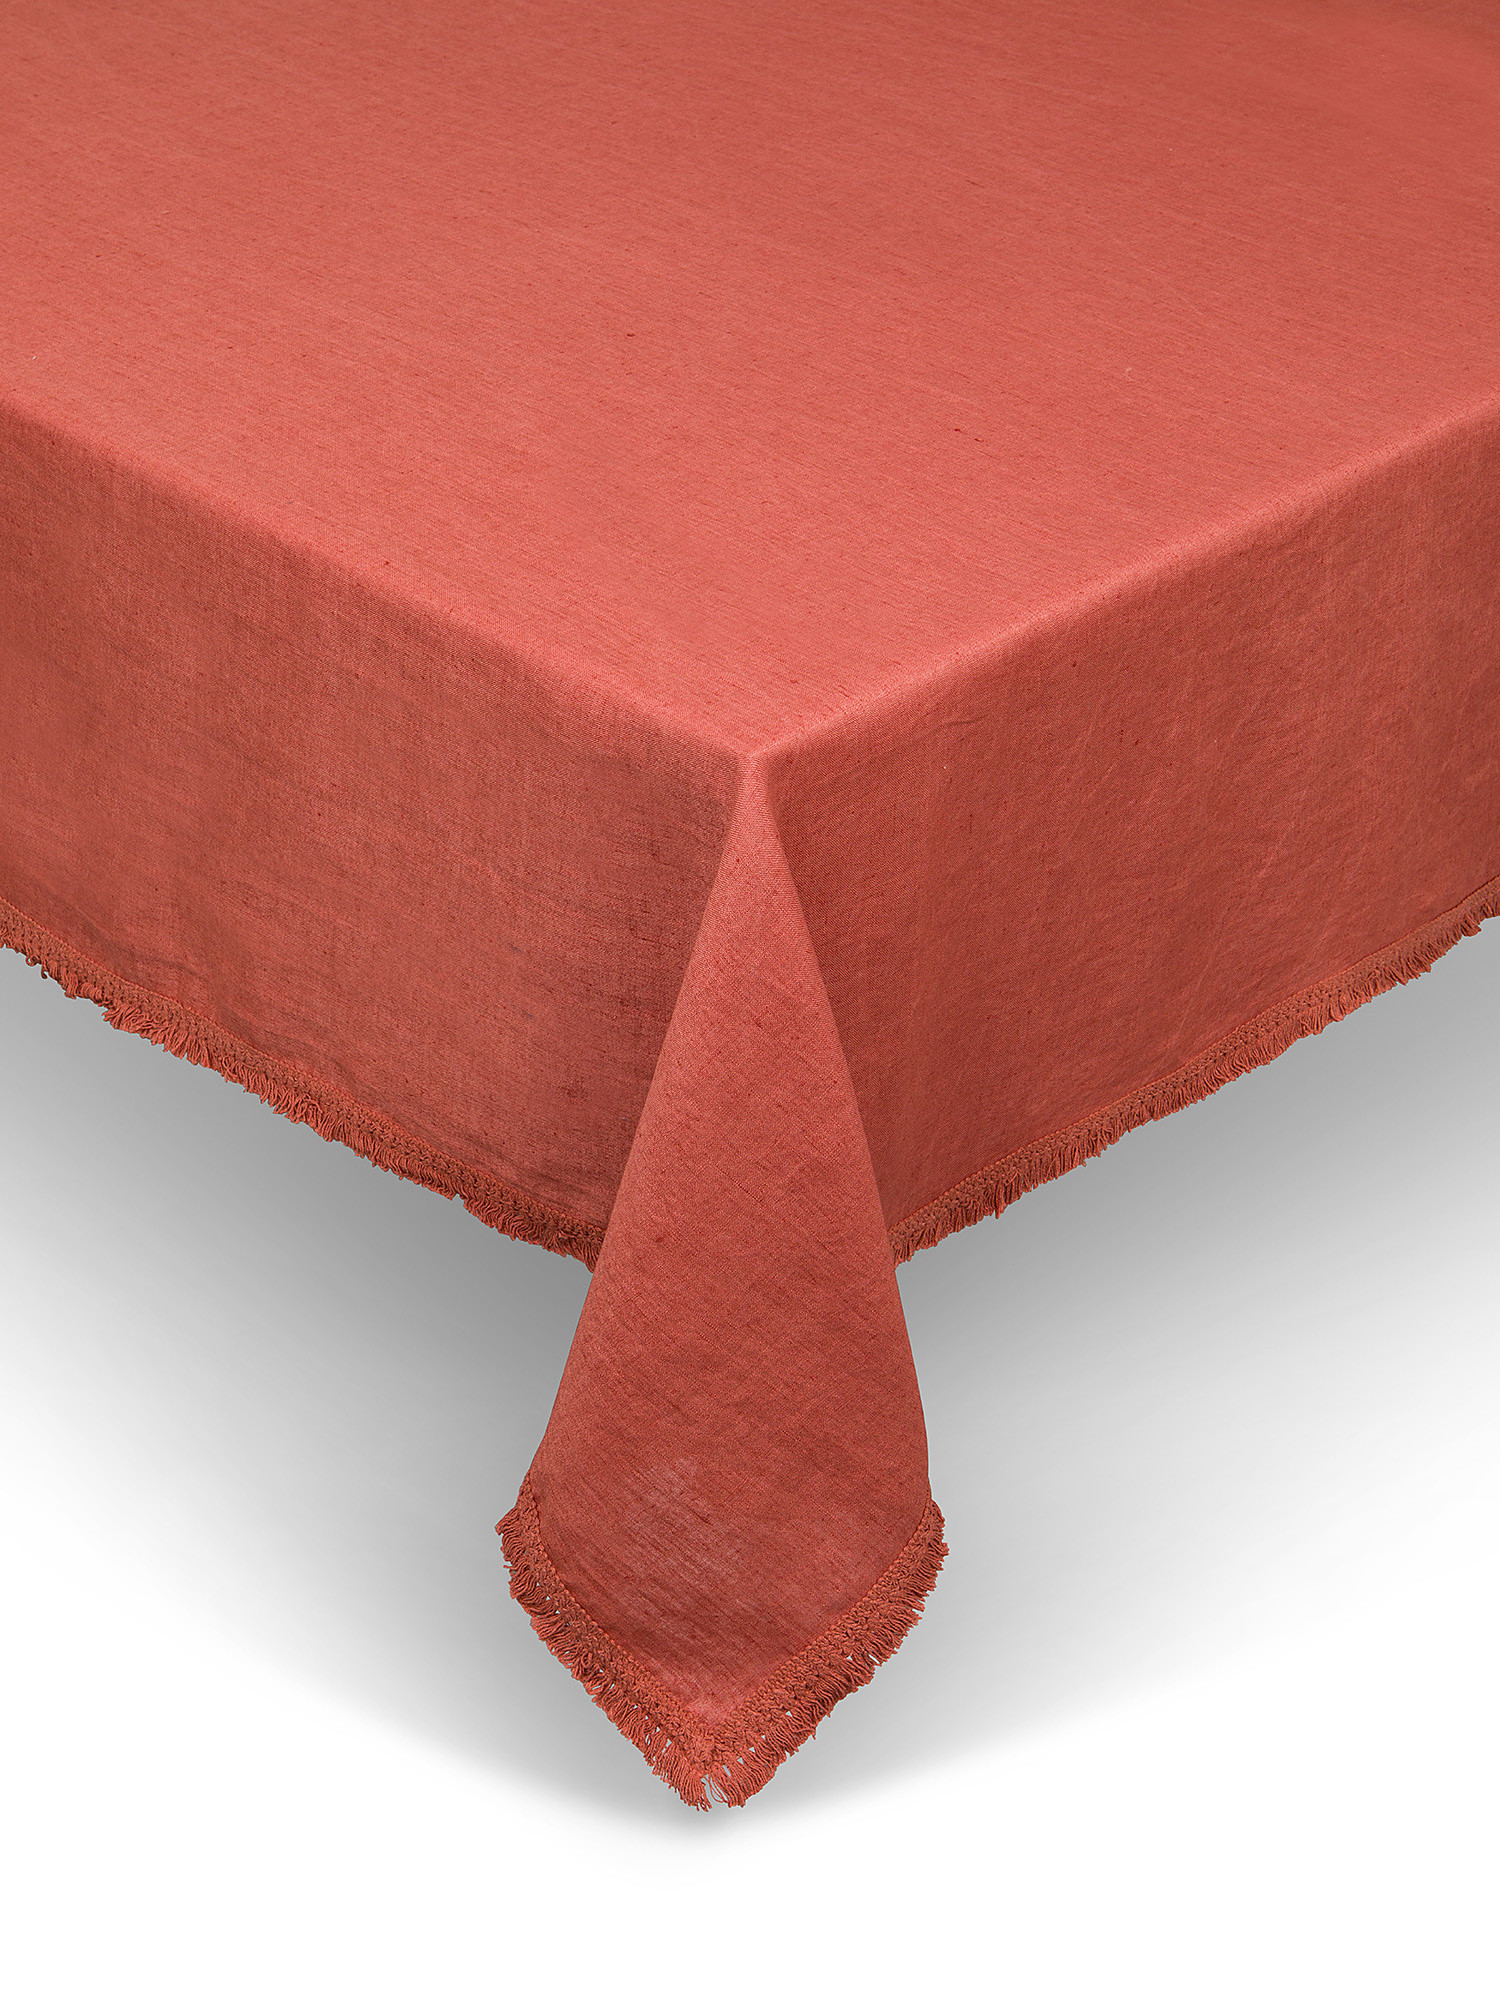 Tovaglia puro lino tinta unita con frangette, Rosso corallo, large image number 0